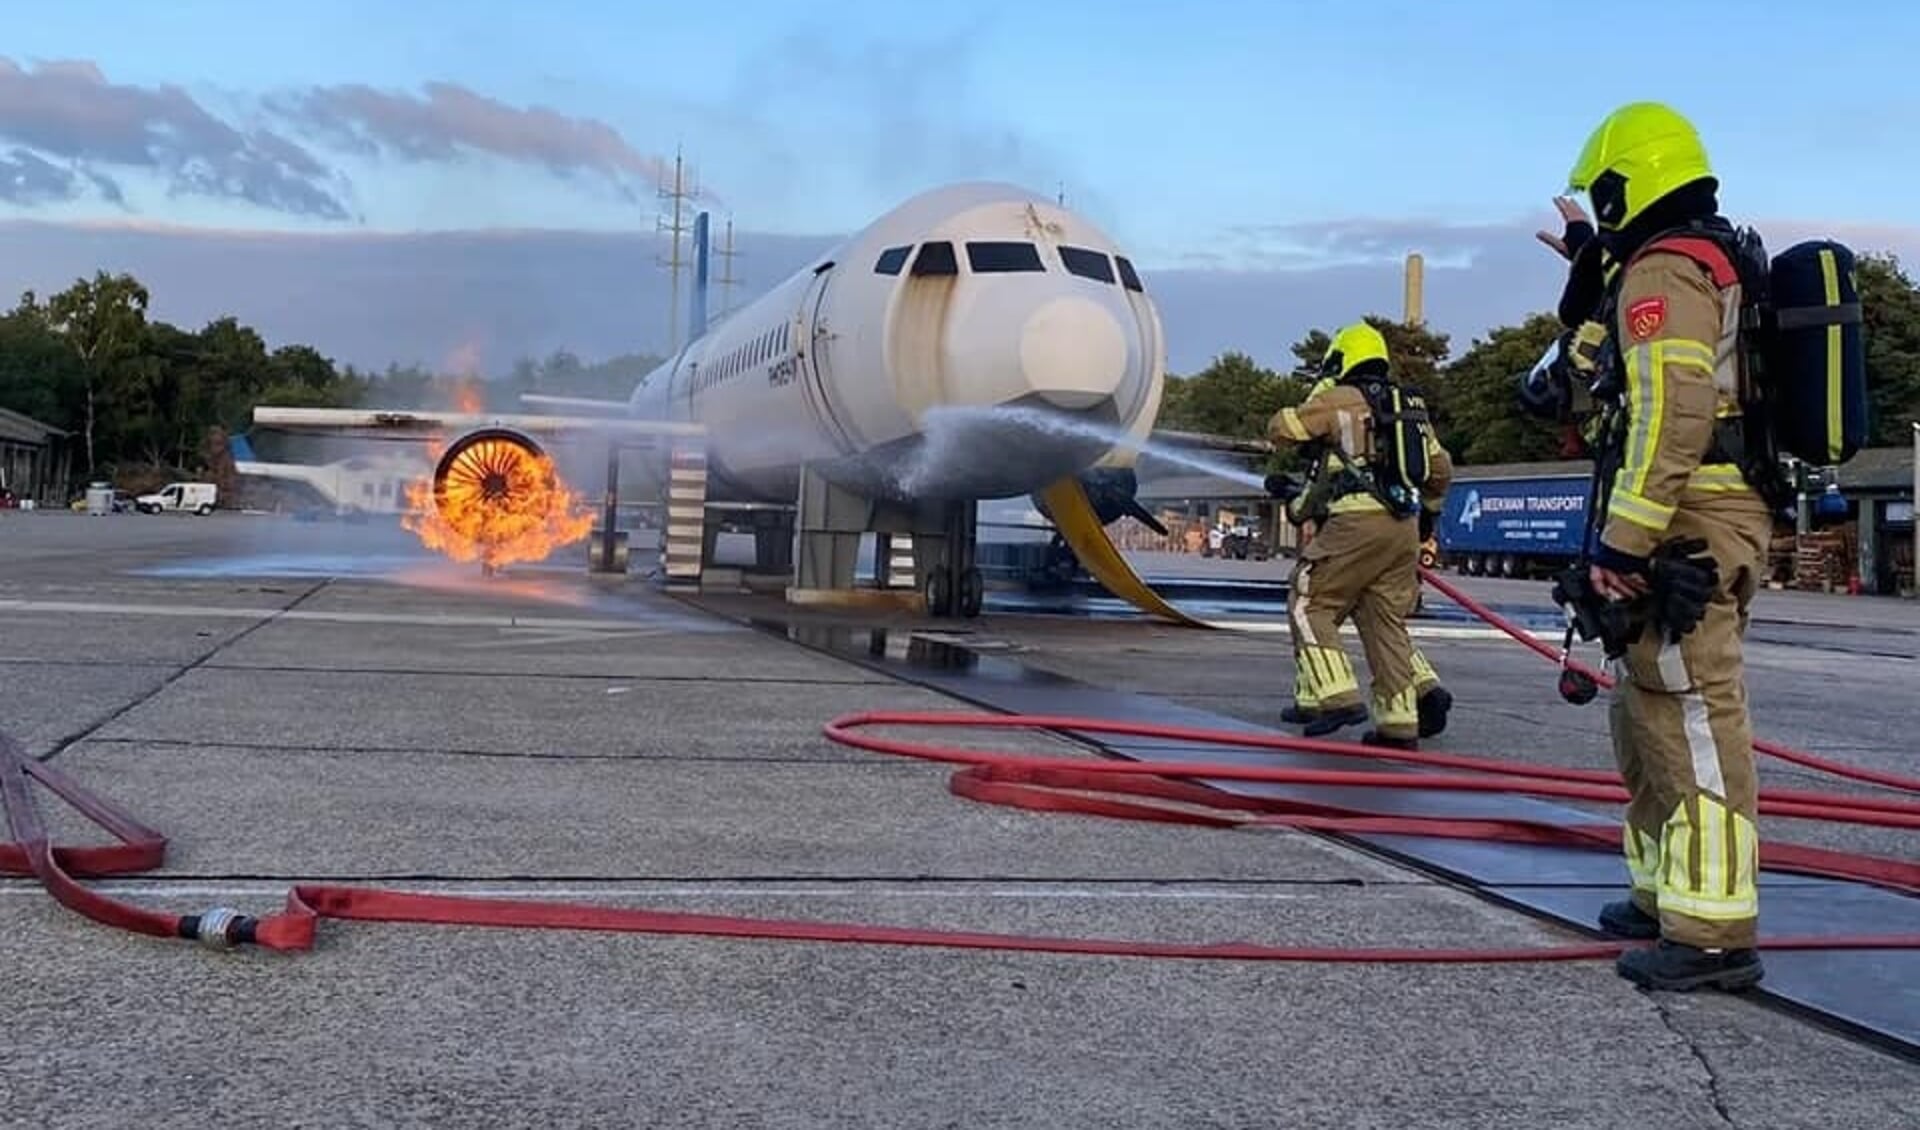 Bergse brandweerlieden oefenen op Airport Weeze